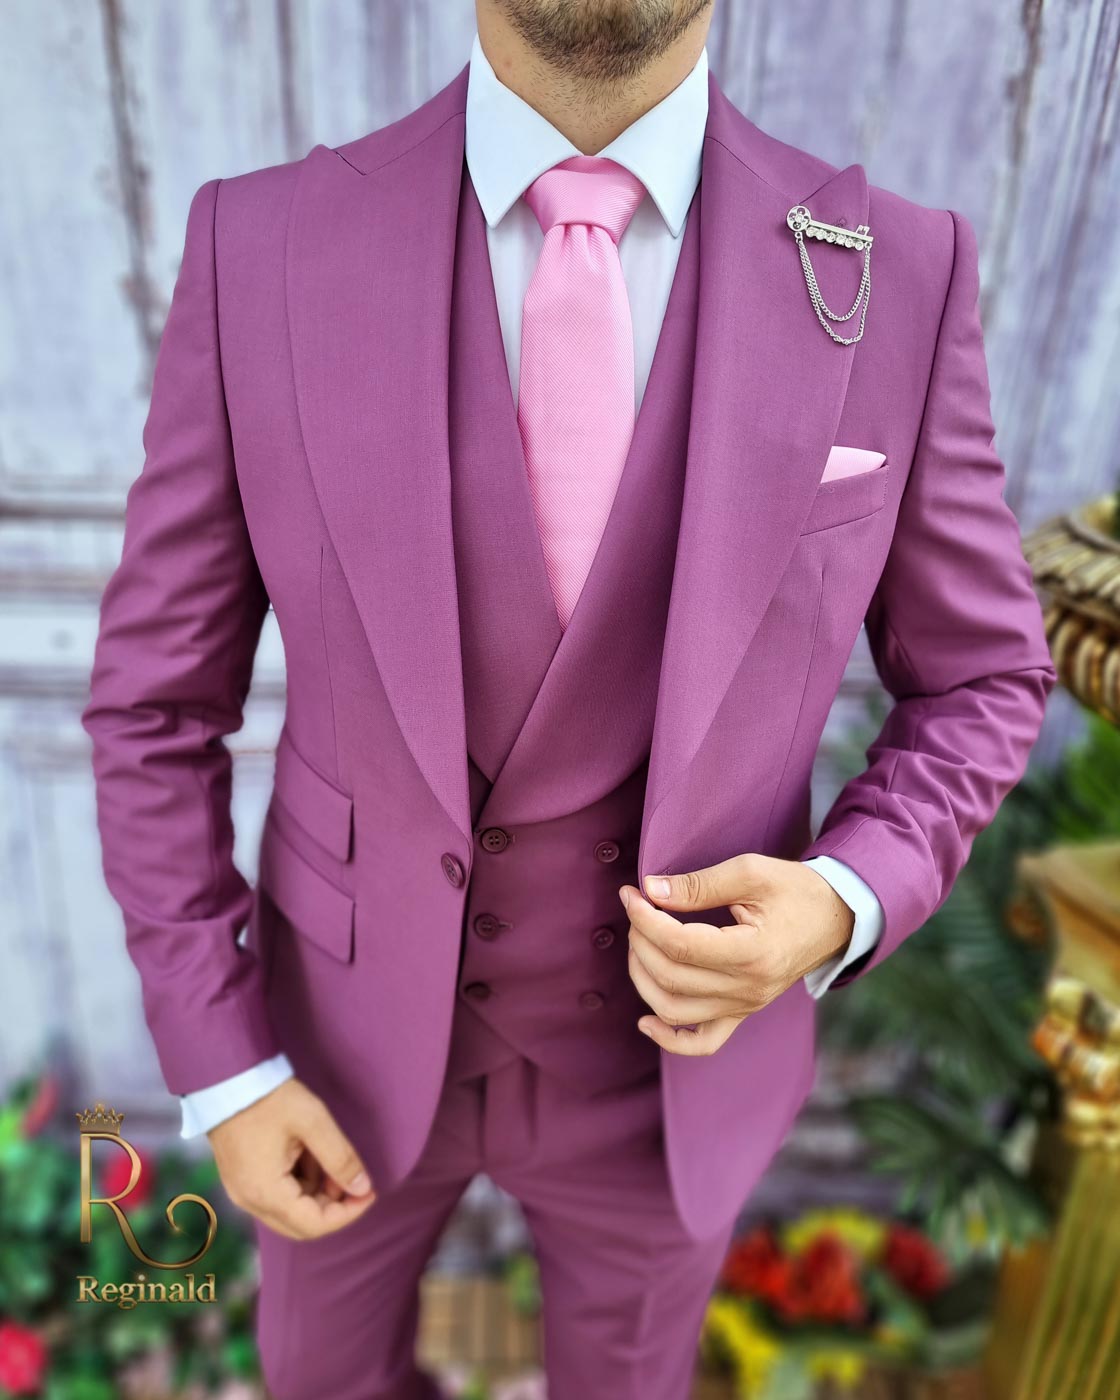 Buy Men Purple Textured Slim Fit Wedding Four Piece Suit Online - 711191 |  Van Heusen